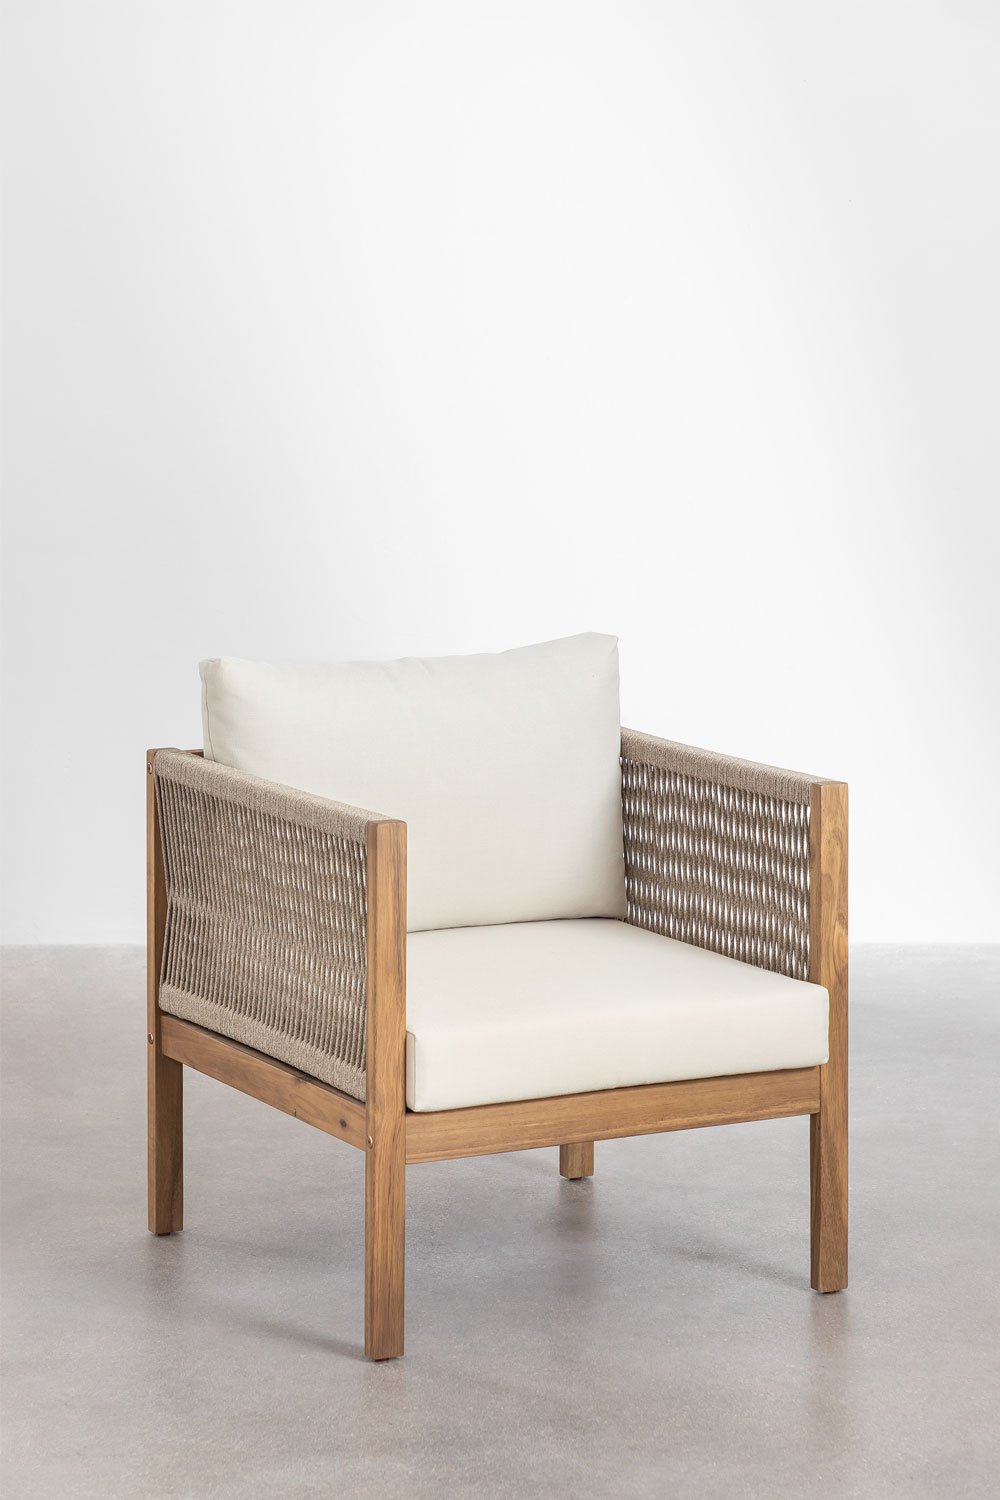 Branson fauteuil van acaciahout, galerij beeld 1